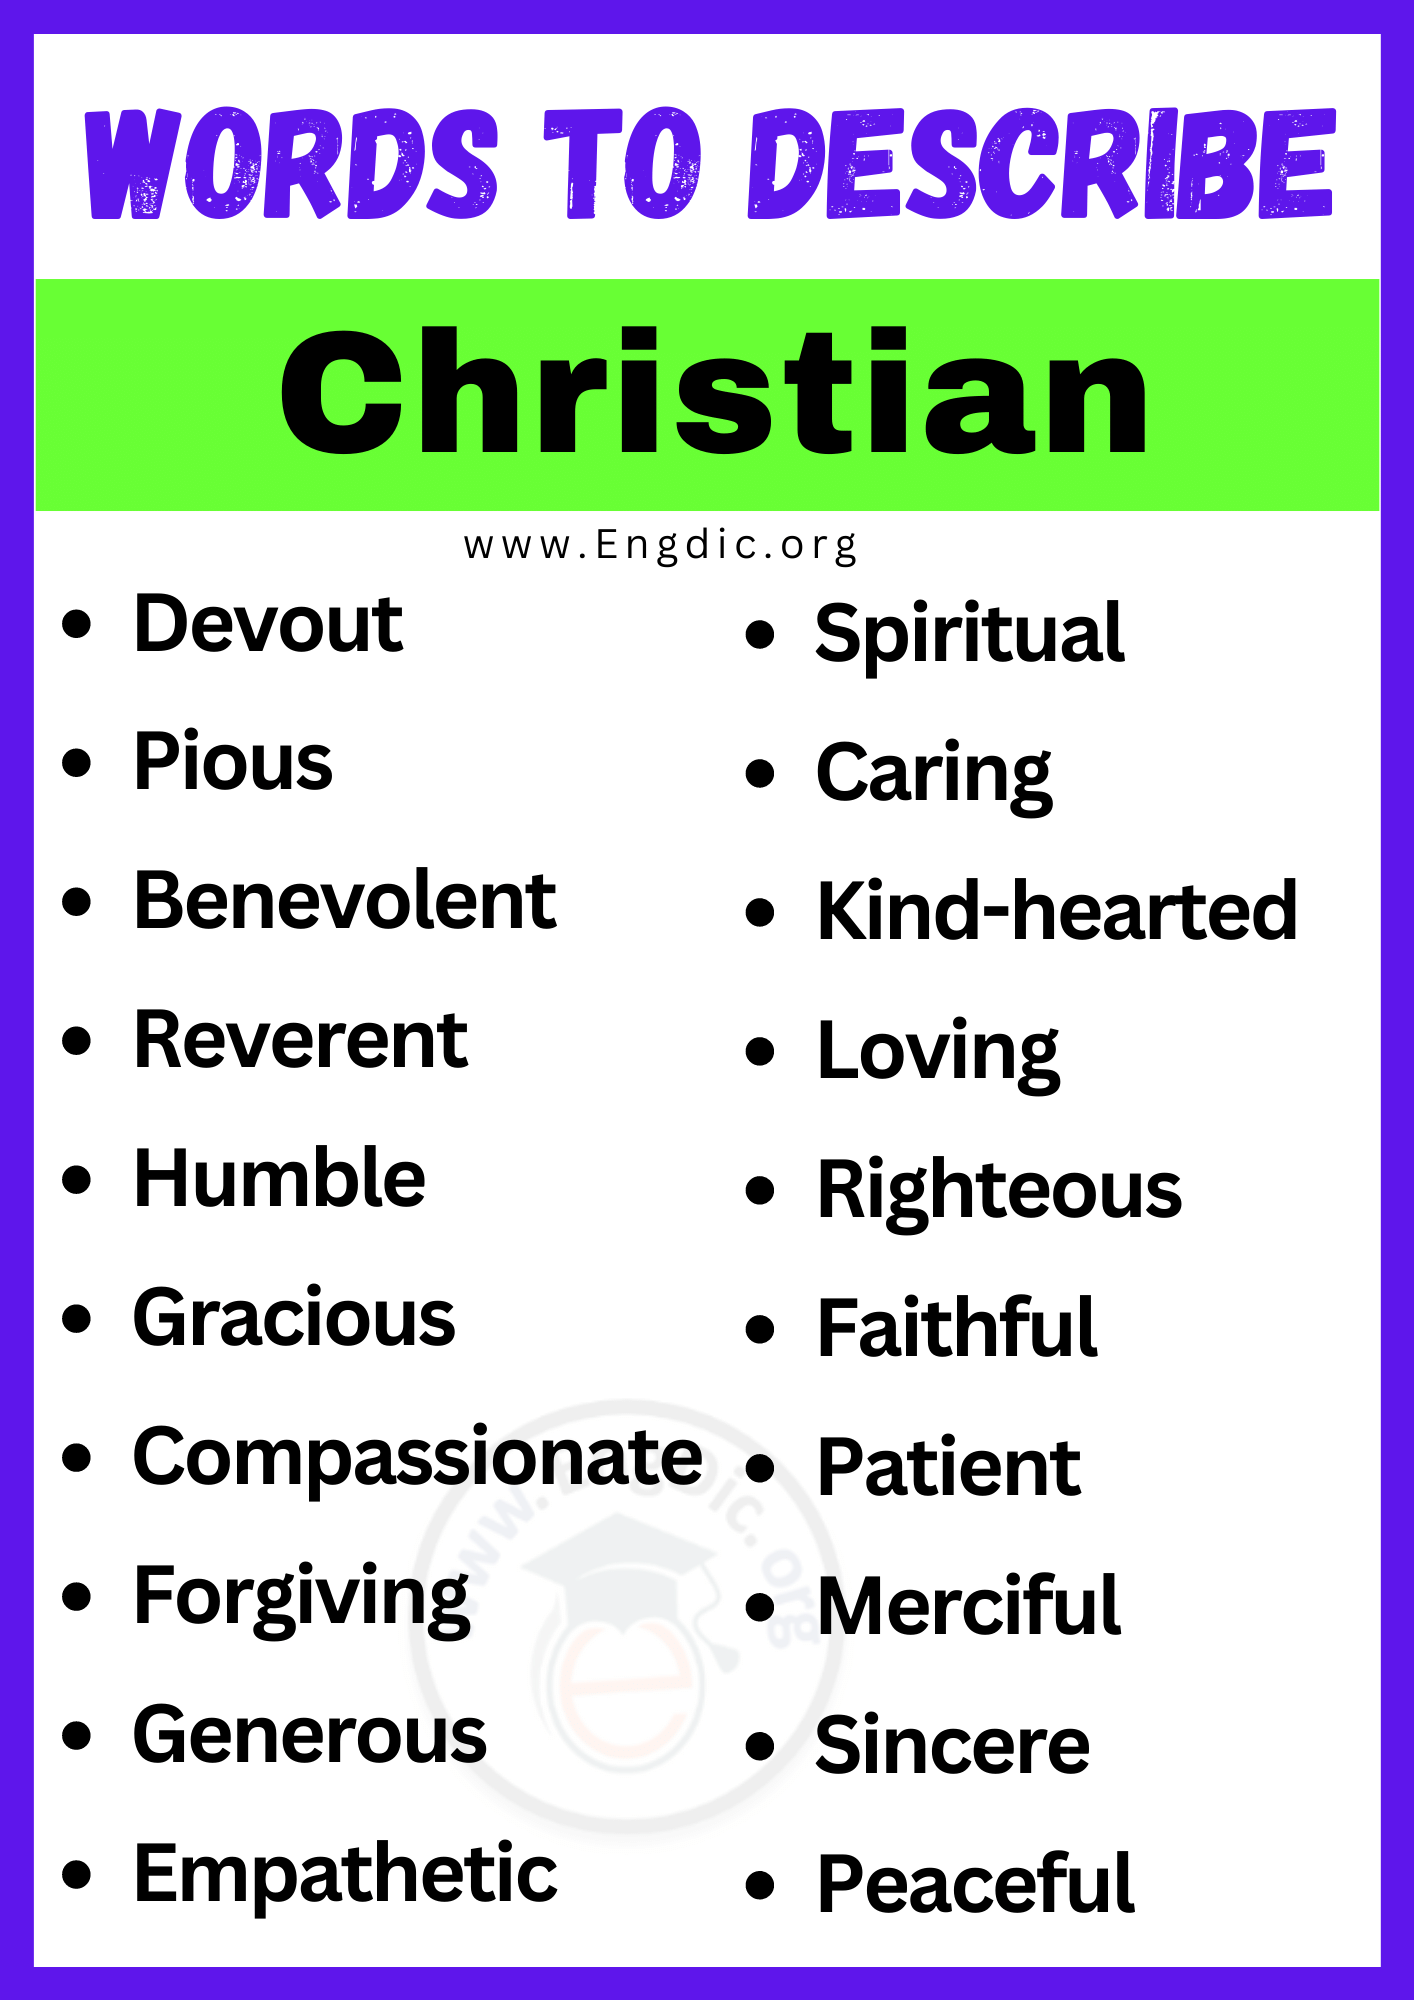 Words to Describe Christian